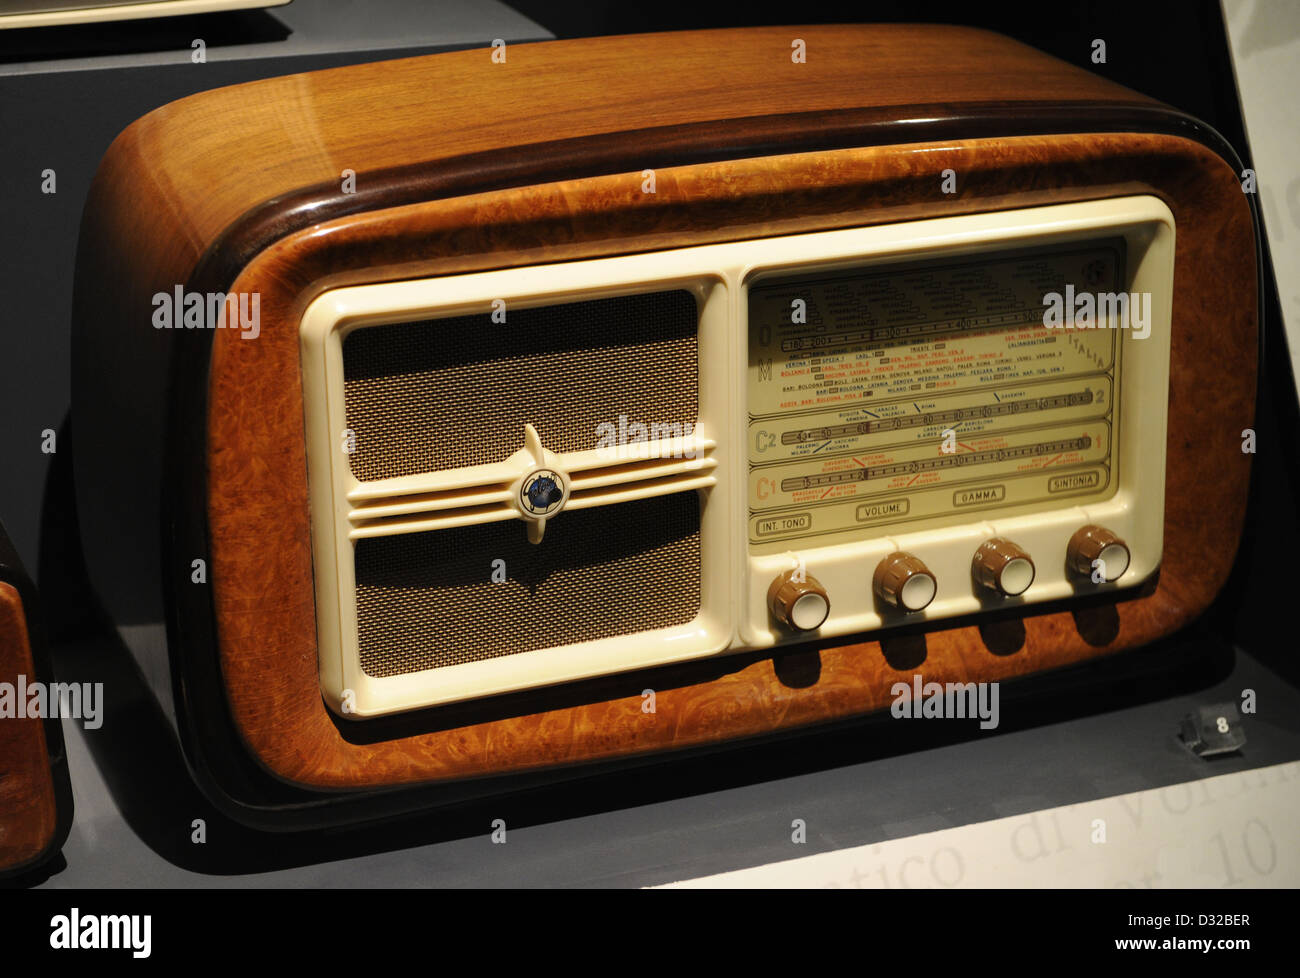 Funk-Empfänger mit Superhet-Schaltung, 4 Ventile, nur AM Empfang, Modell G175. 1952. Gelosa, Italien. Stockfoto